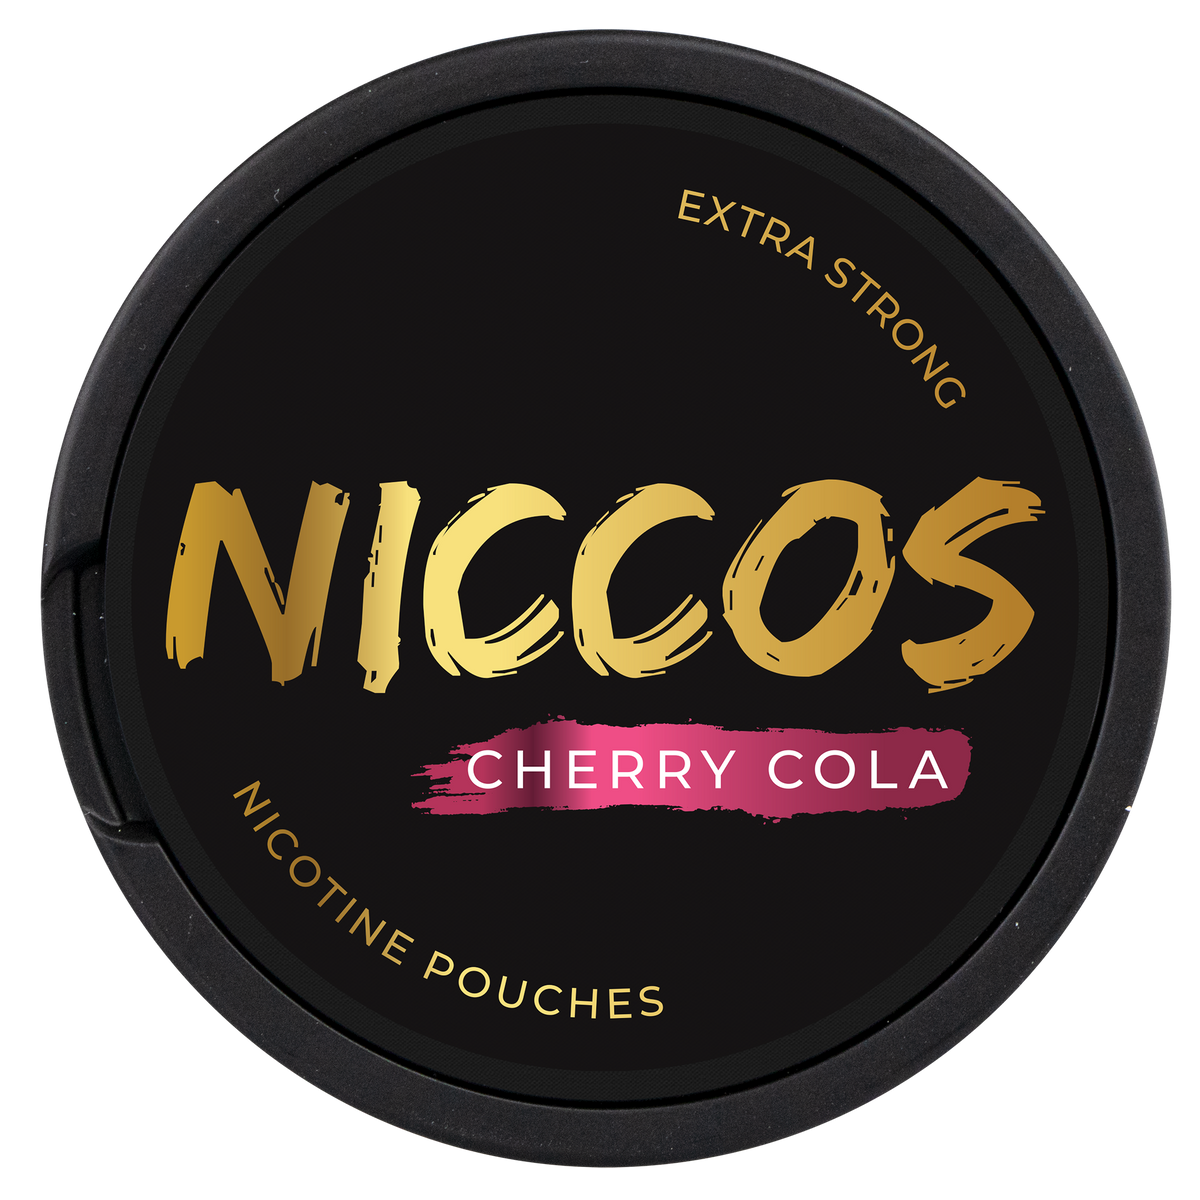 NICCOS Cherry Cola